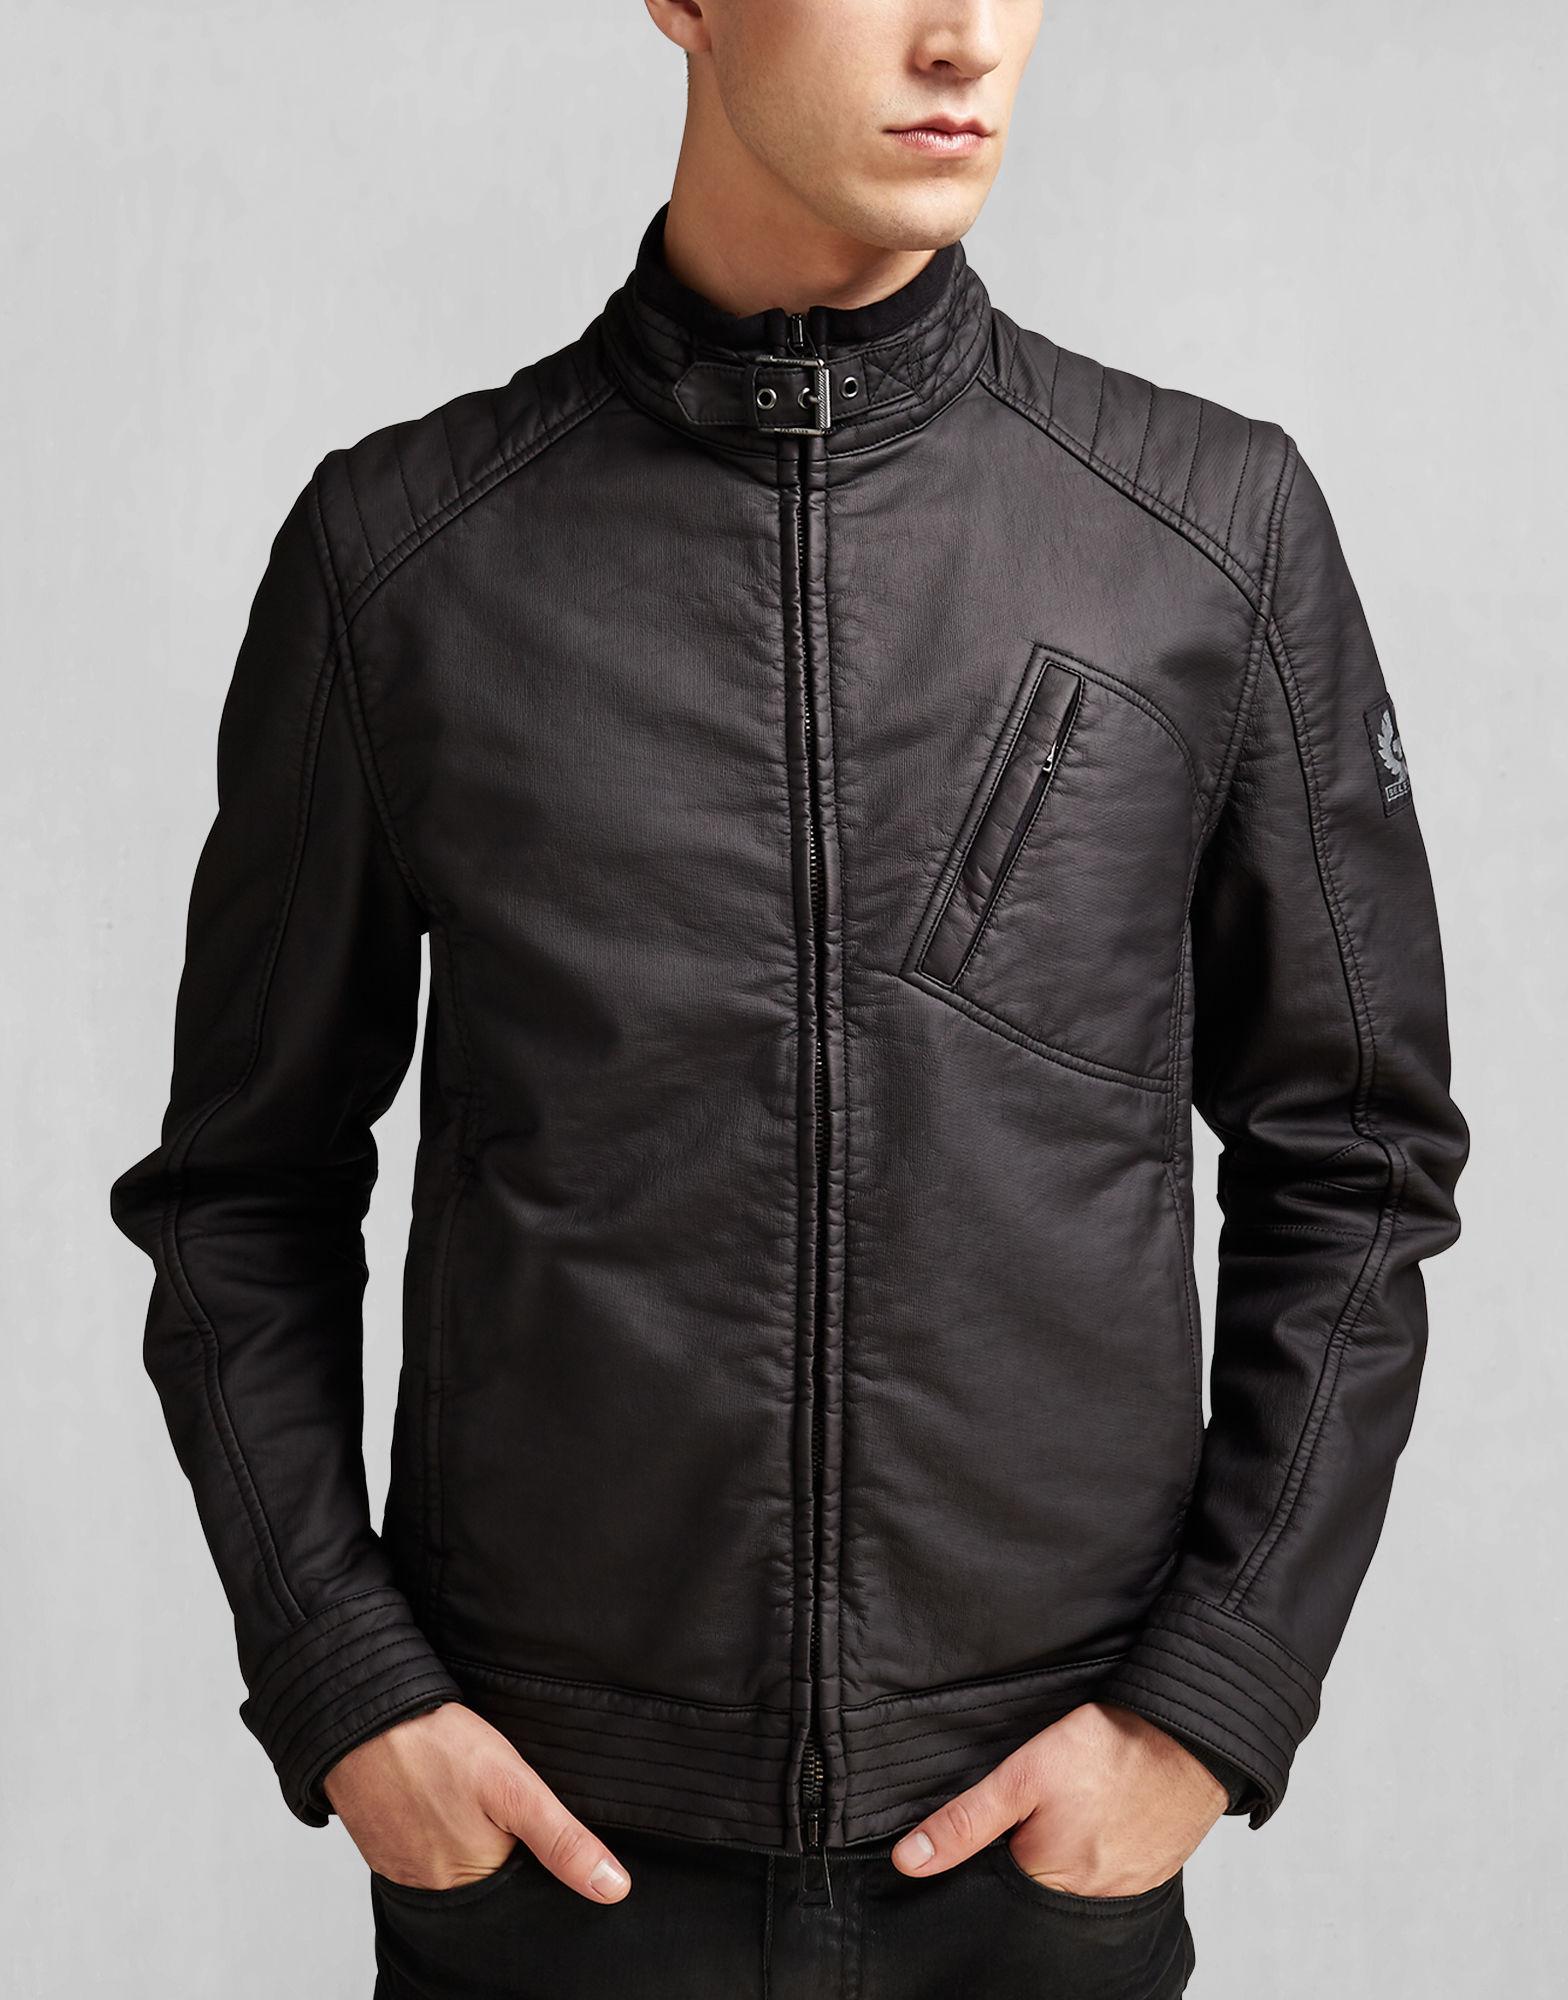 Belstaff Cotton H Racer Jacket in Black for Men - Lyst